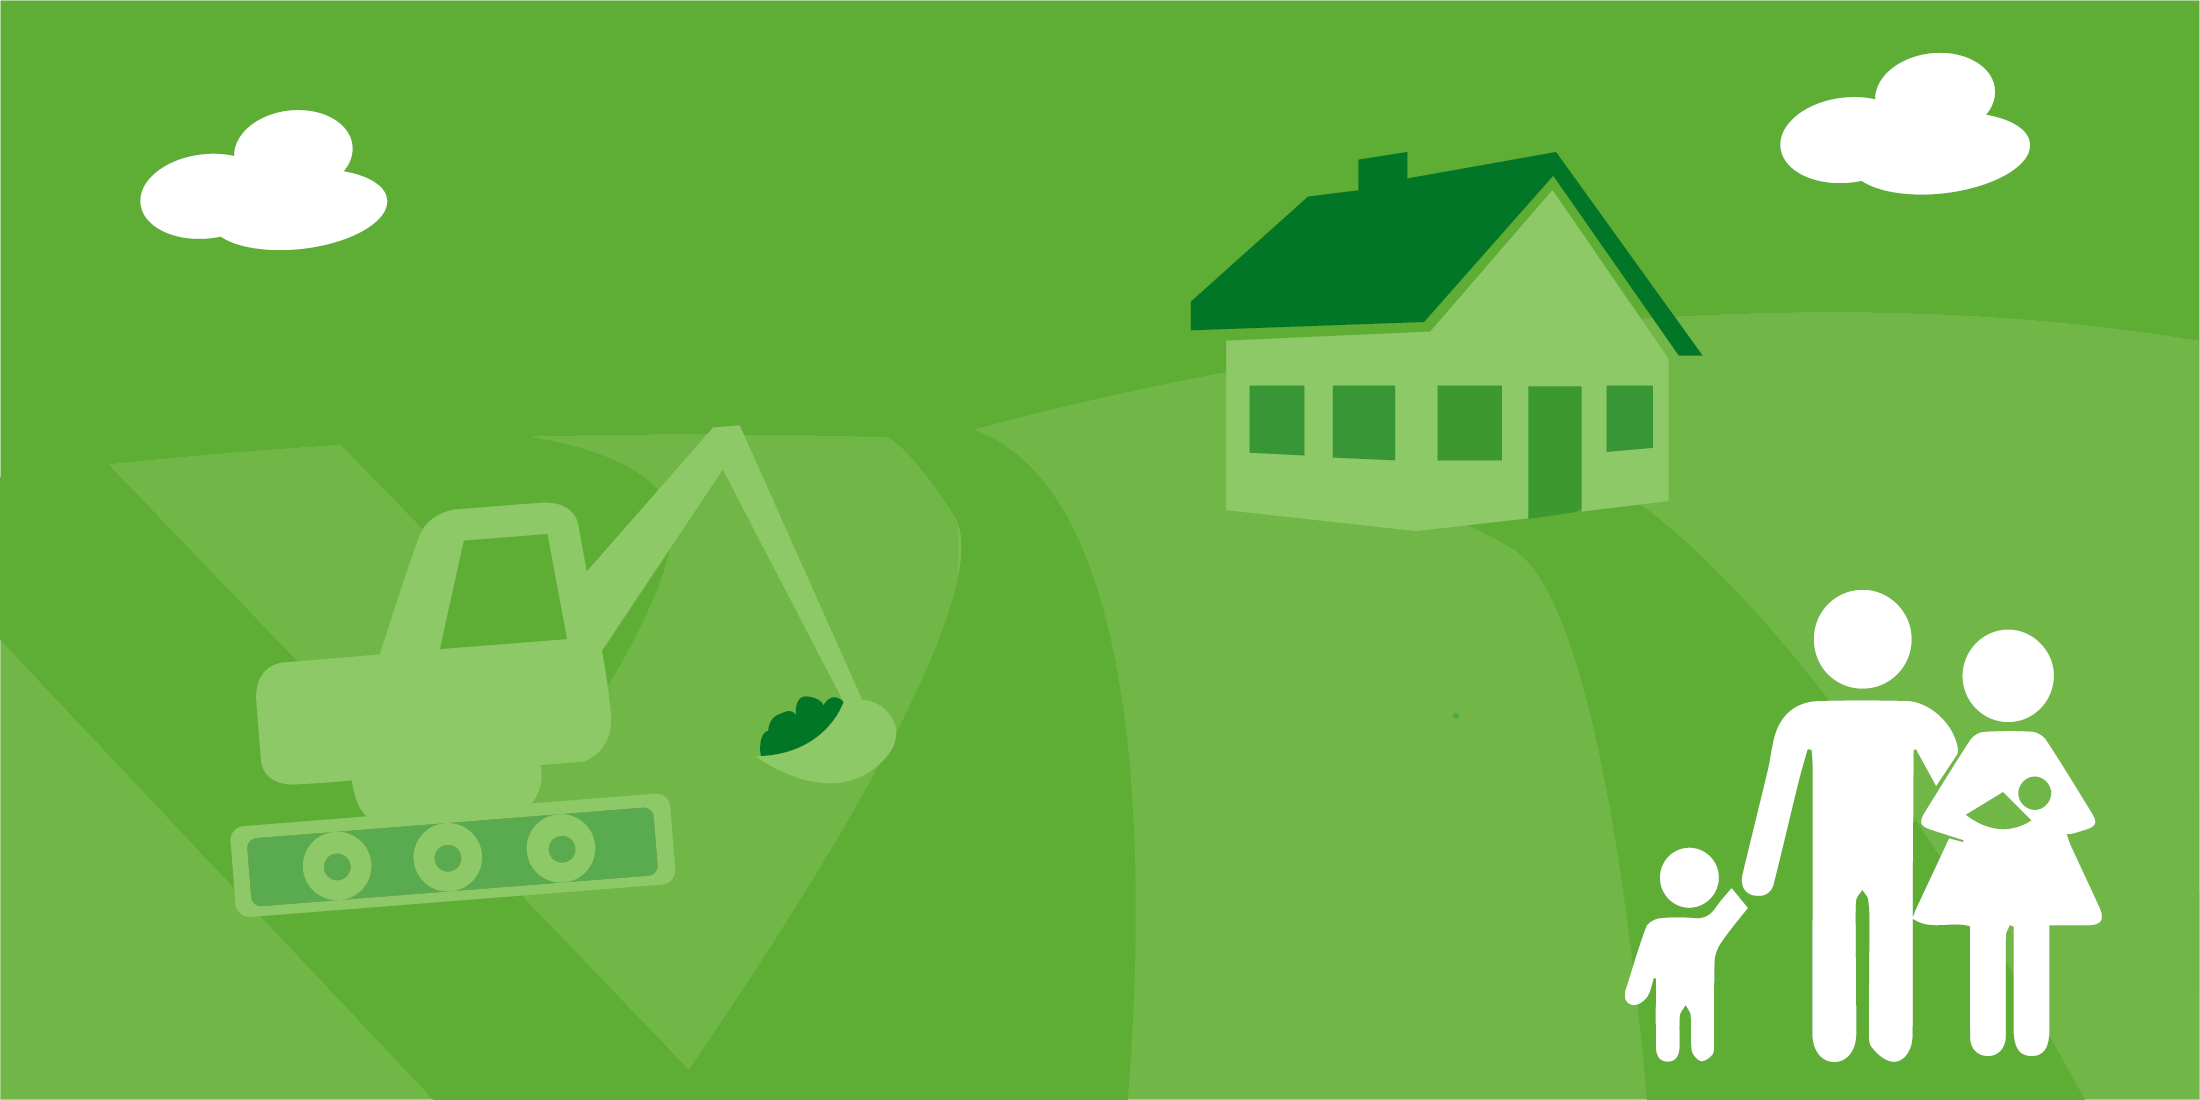 Die Infografik zeigt einen Bagger, ein Wohnhaus und eine Familie. Durch klick aufs Bild gelangen Sie zum interaktiven Atlas zum Thema Bauen Wohnen Haushalte.